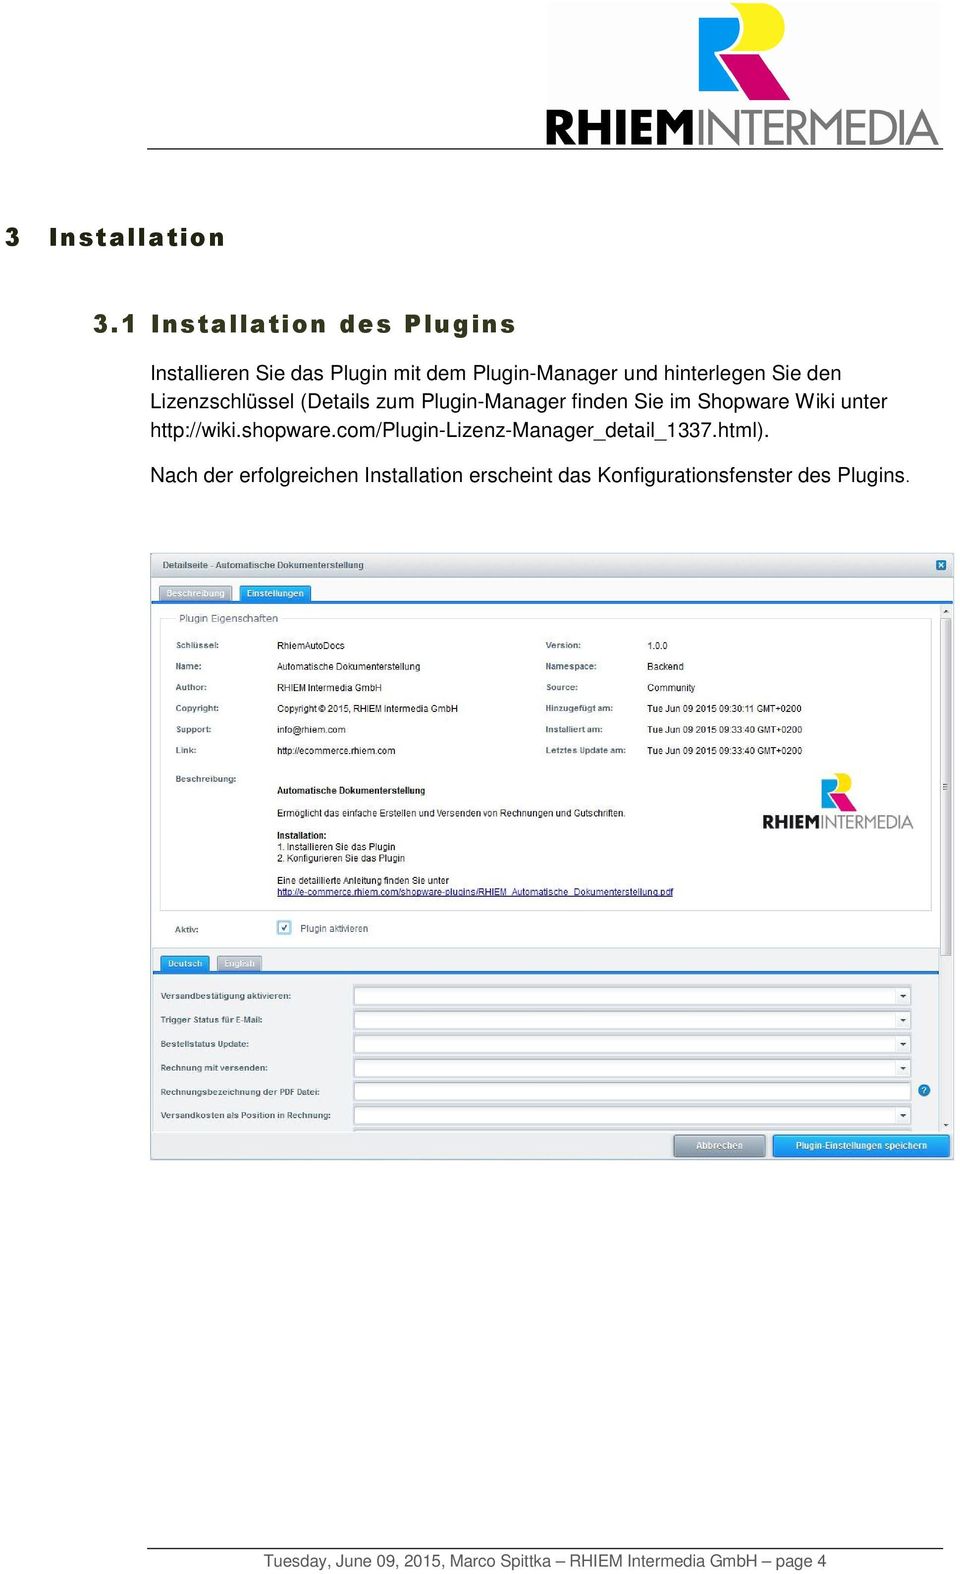 Lizenzschlüssel (Details zum Plugin-Manager finden Sie im Shopware Wiki unter http://wiki.shopware.